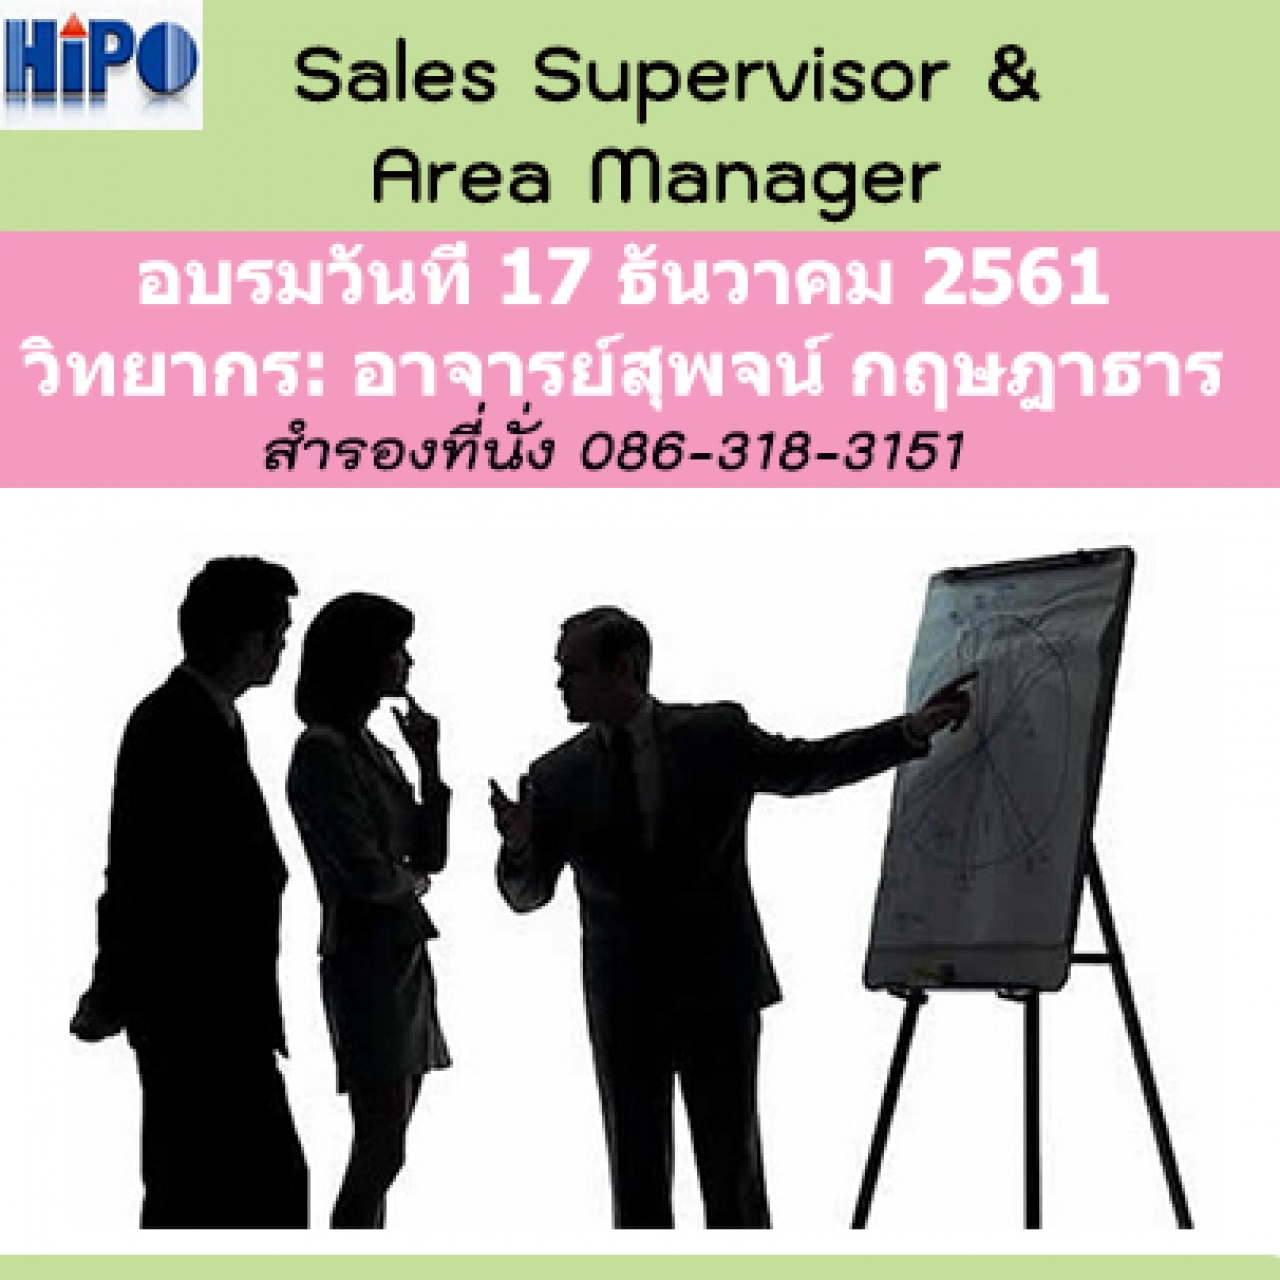 หลักสูตร Sales Supervisor & Area Manager